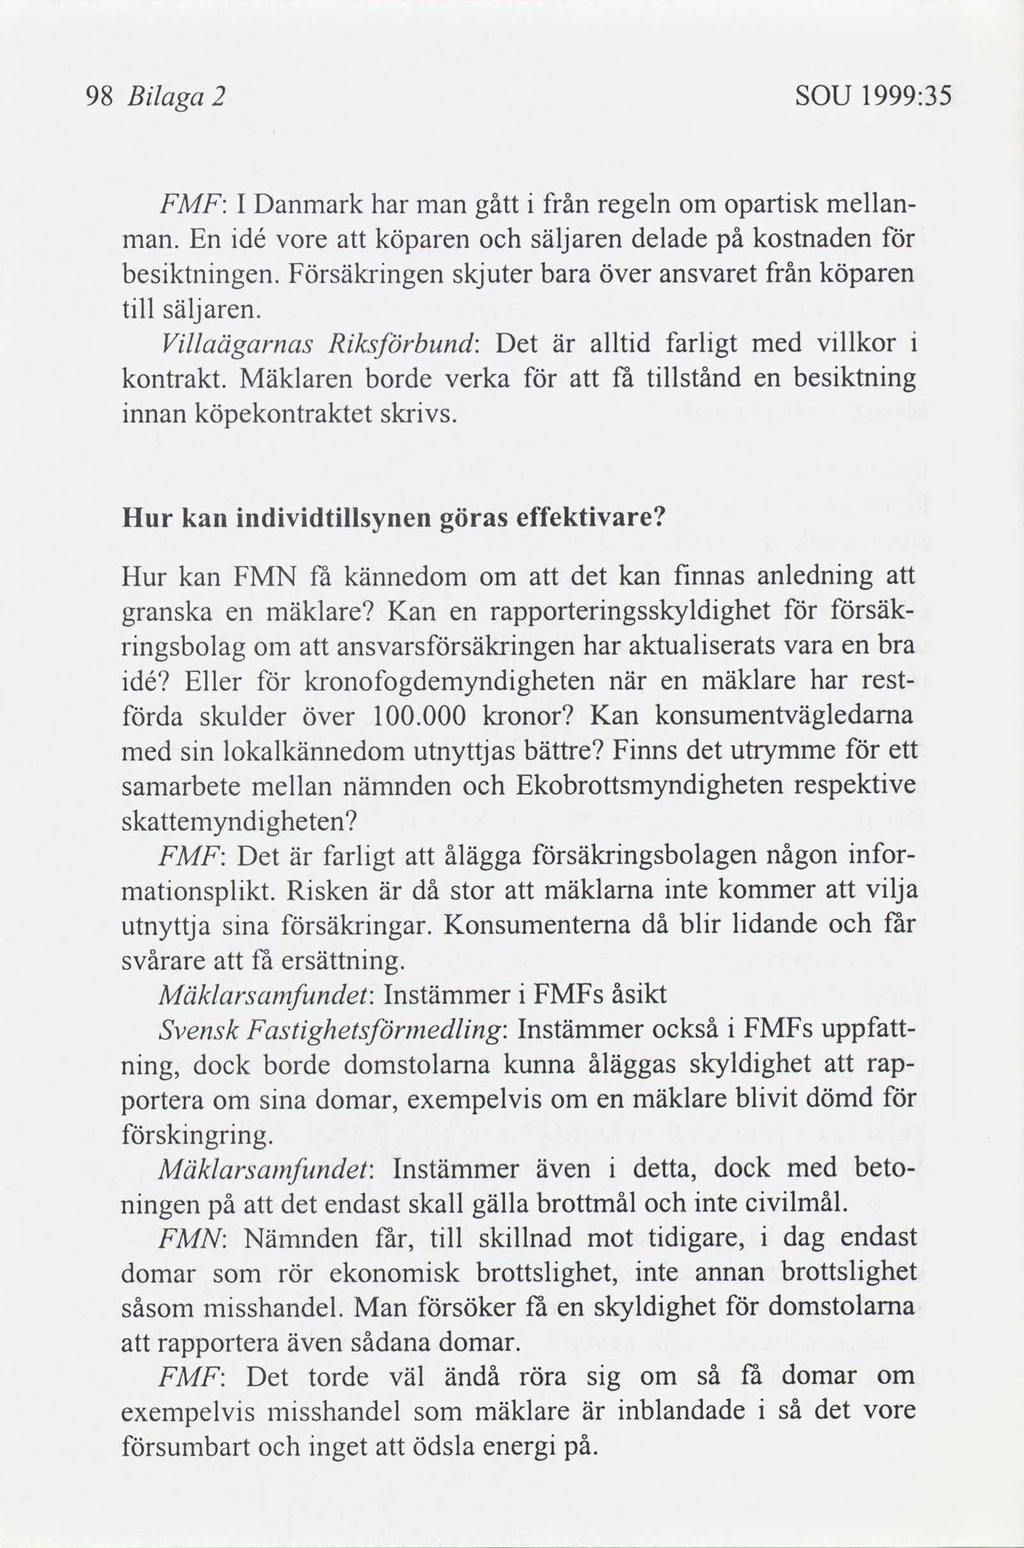 98 Blaga 2 SOU 1999:35 FMF: I Danmark har man gått från regeln om opartsk mellanman. En dé vore köparen säljaren delade på kostnaden besktnngen.